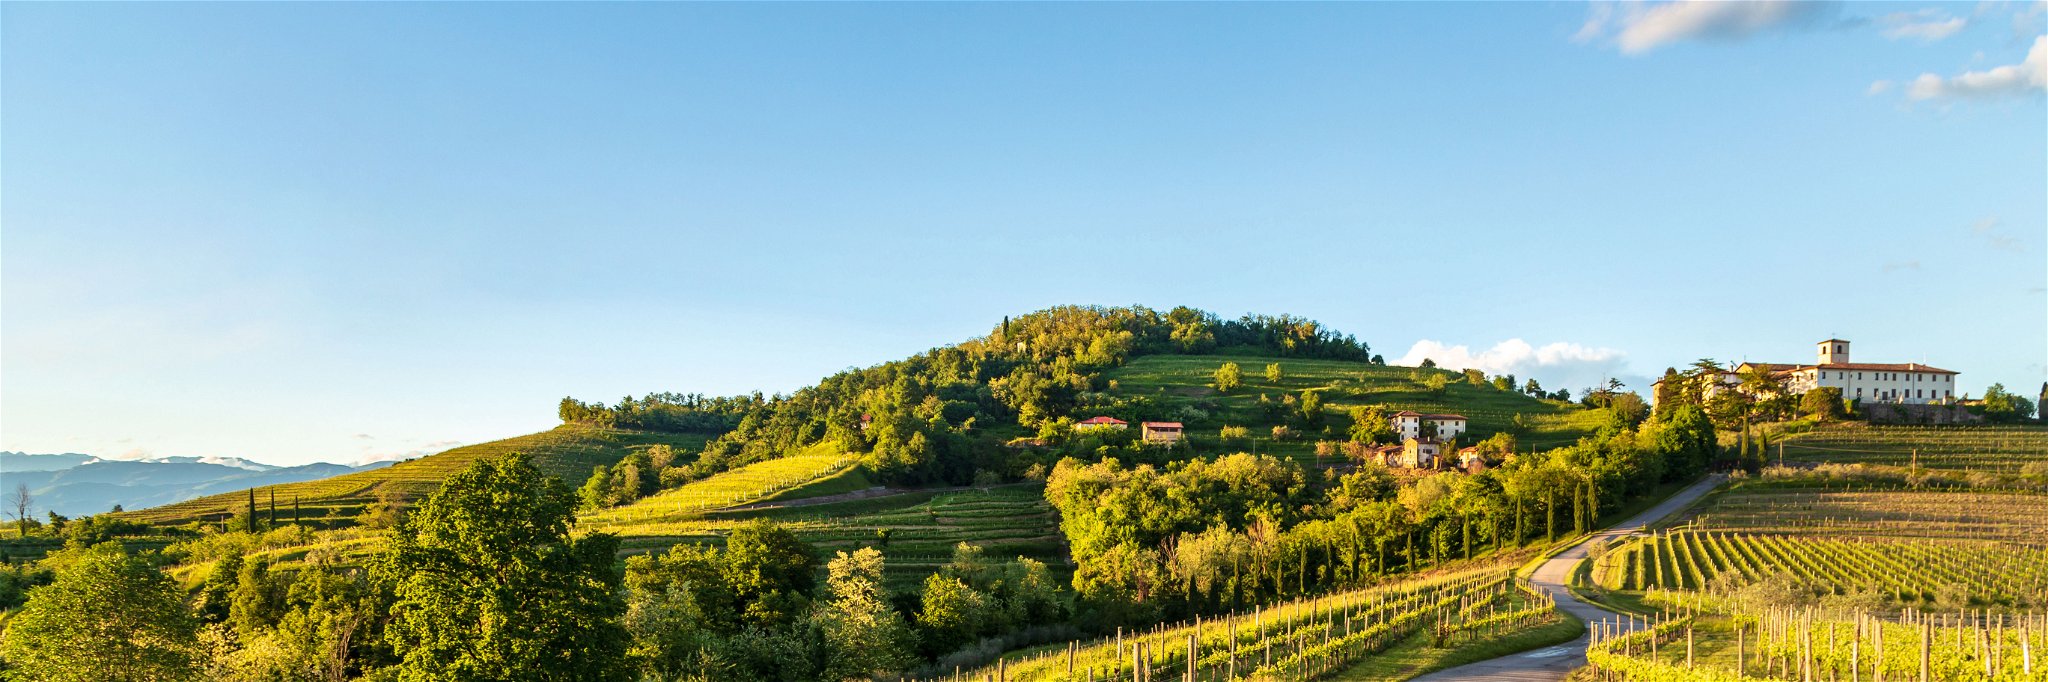 Gelobtes Land. Die Abbazia di Rosazzo ist eine mächtige Klosteranlage. Von hier gingen entscheidende Impulse für den Weinbau im Friaul aus.